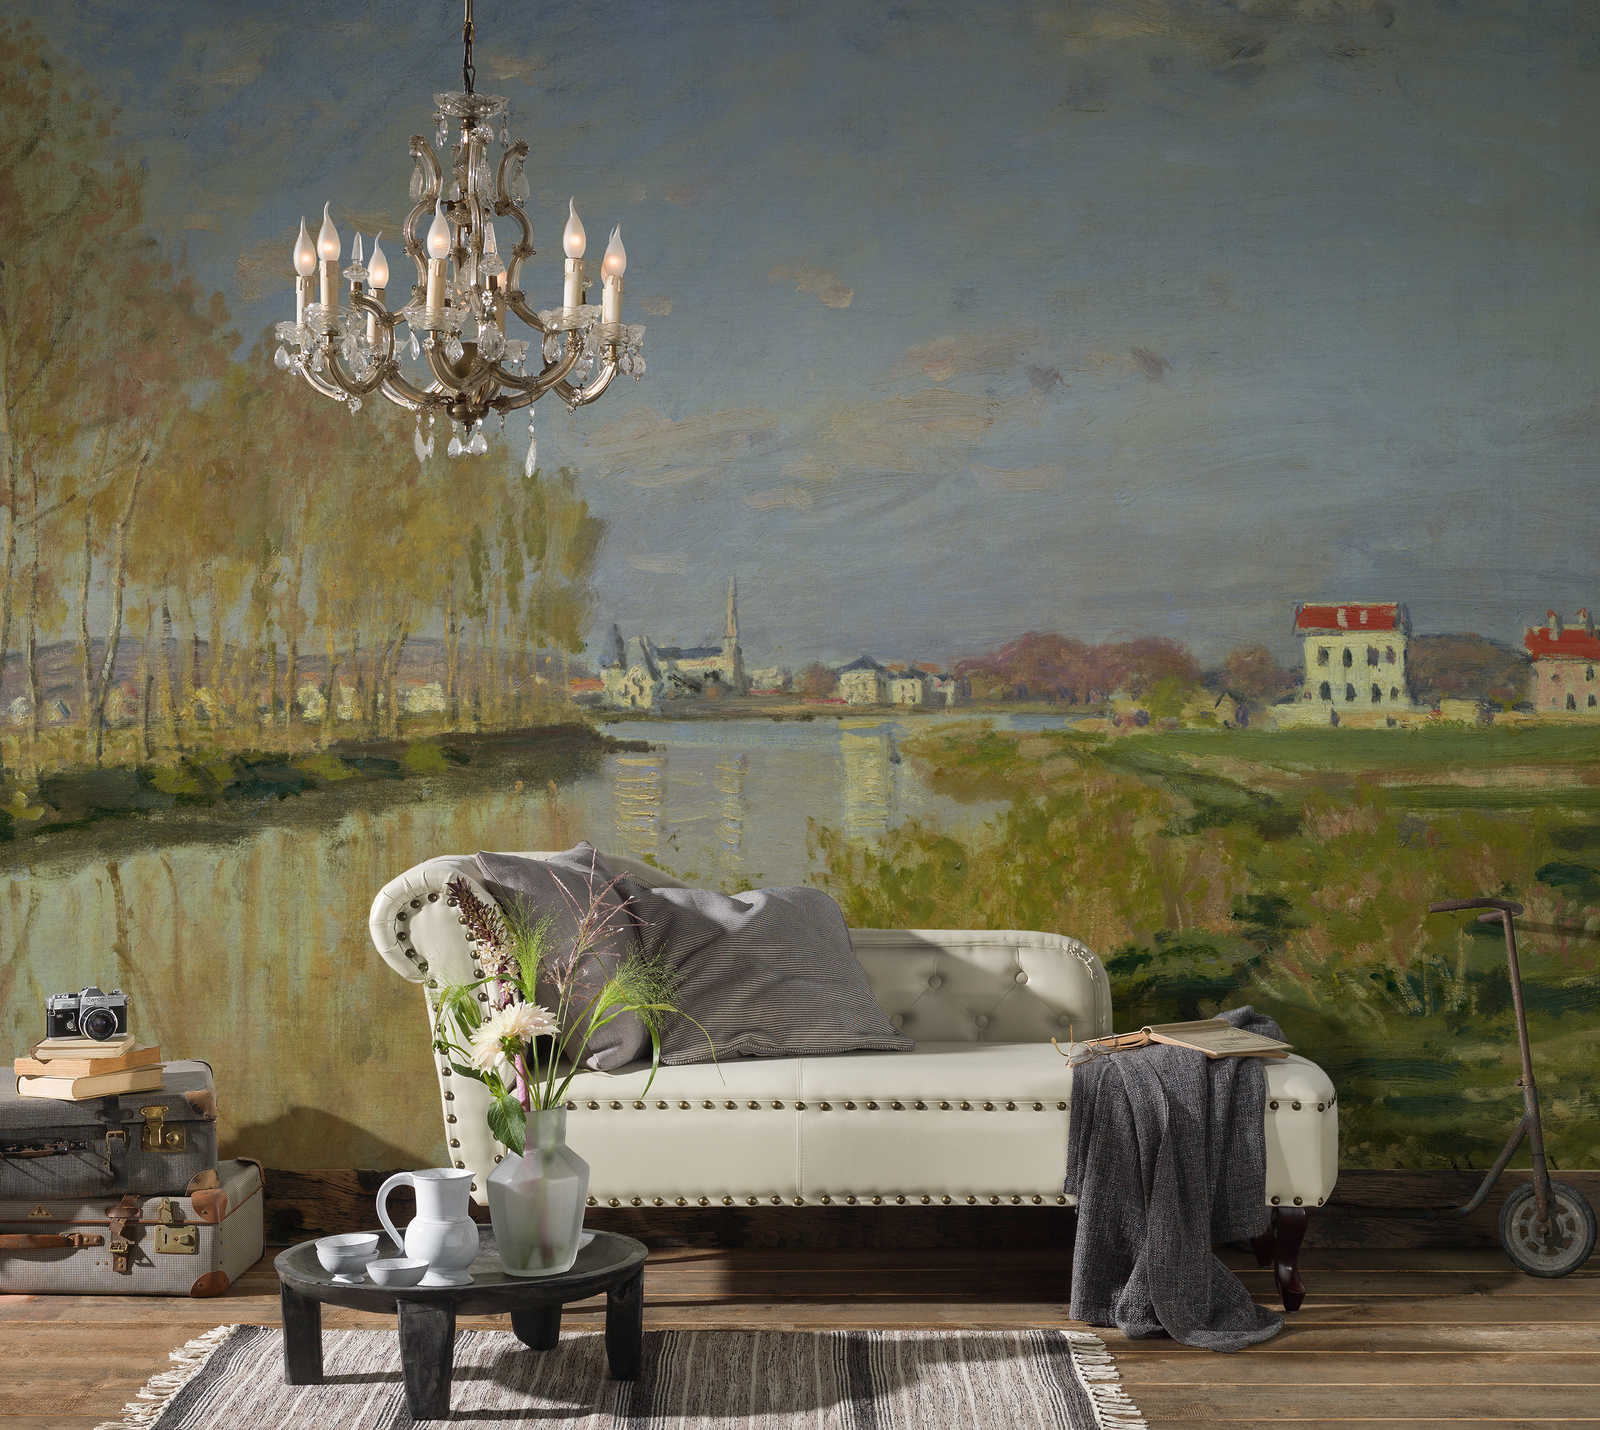             Fototapete "Die Seine in Argenteuil" von Claude Monet
        